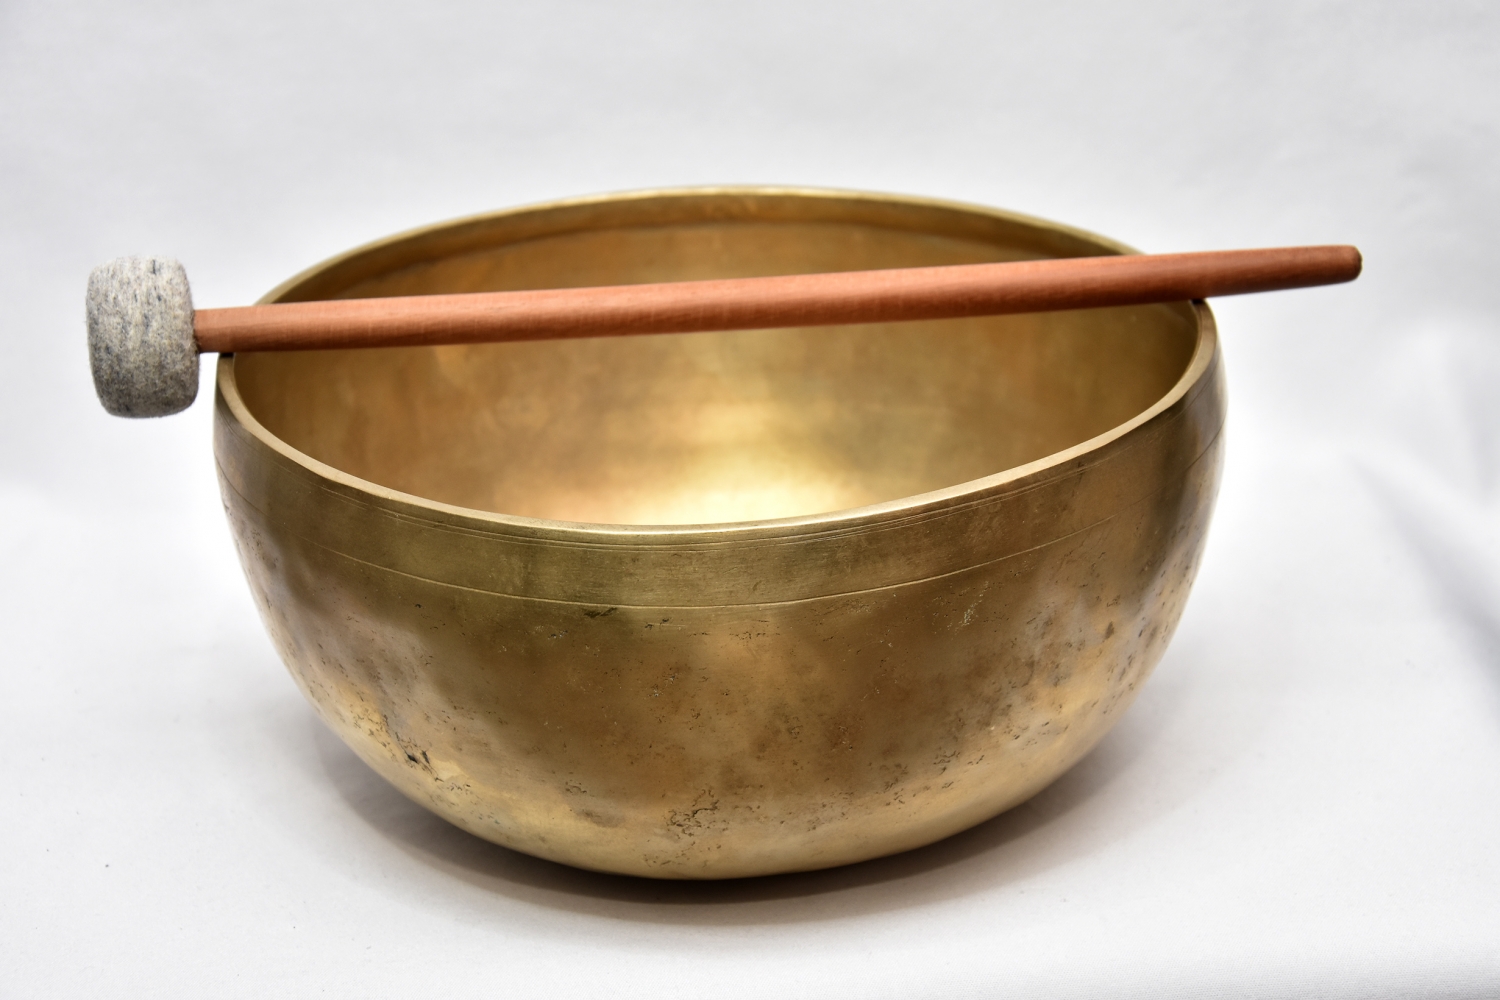 CHÖ-PA singing bowl, 1530 grams